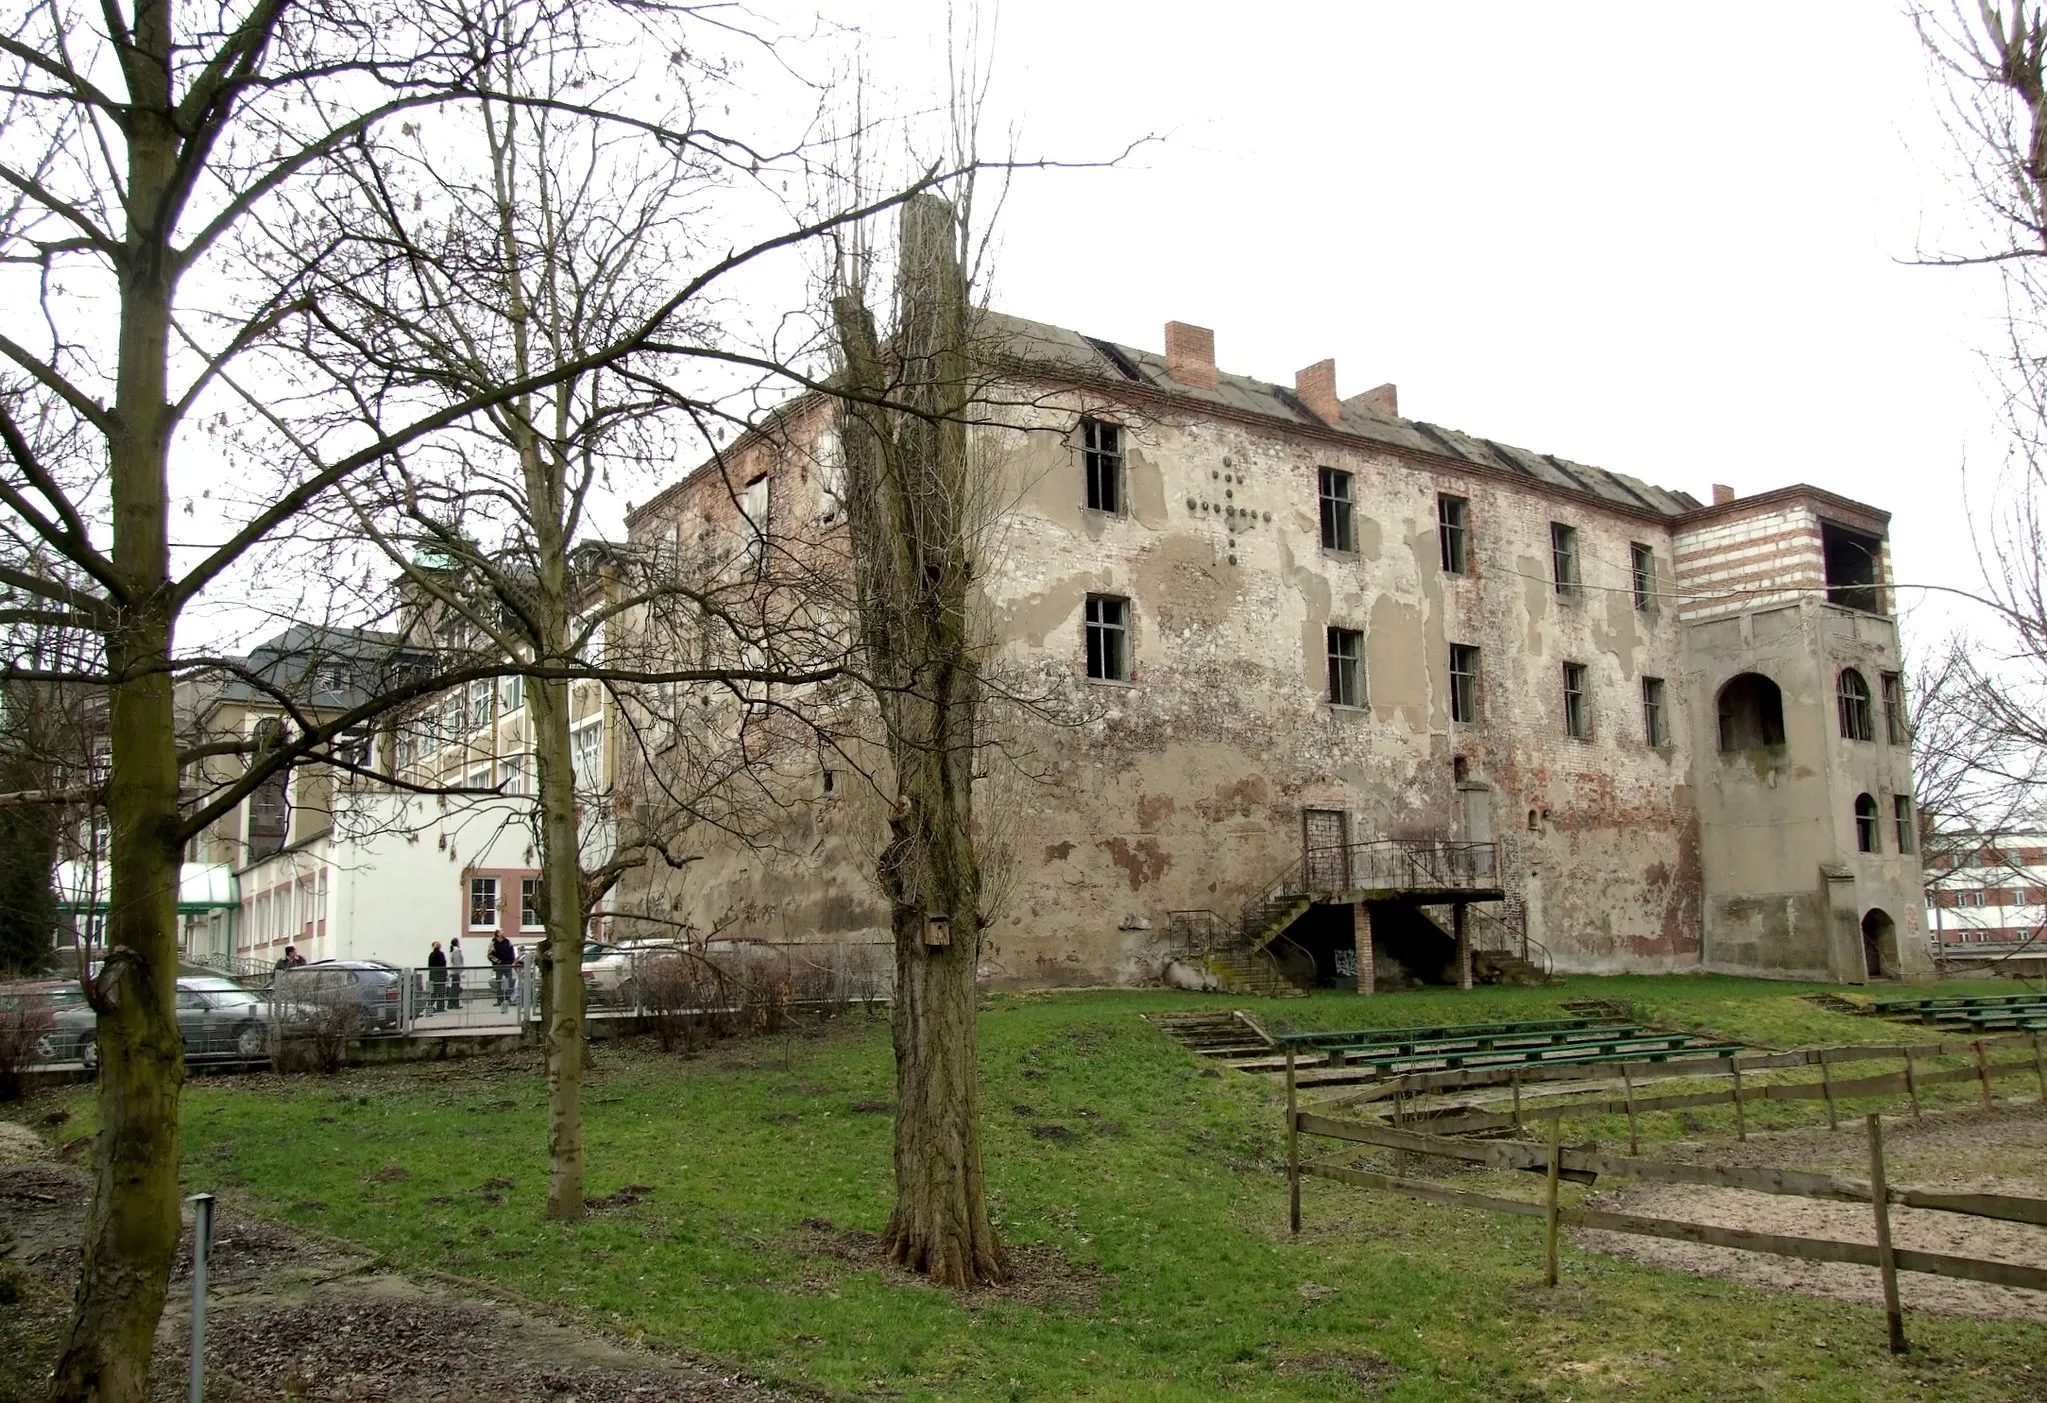 Photo showing: Zamek w Świebodzinie

Autor: Mohylek 18:08, 8 March 2007 (UTC)